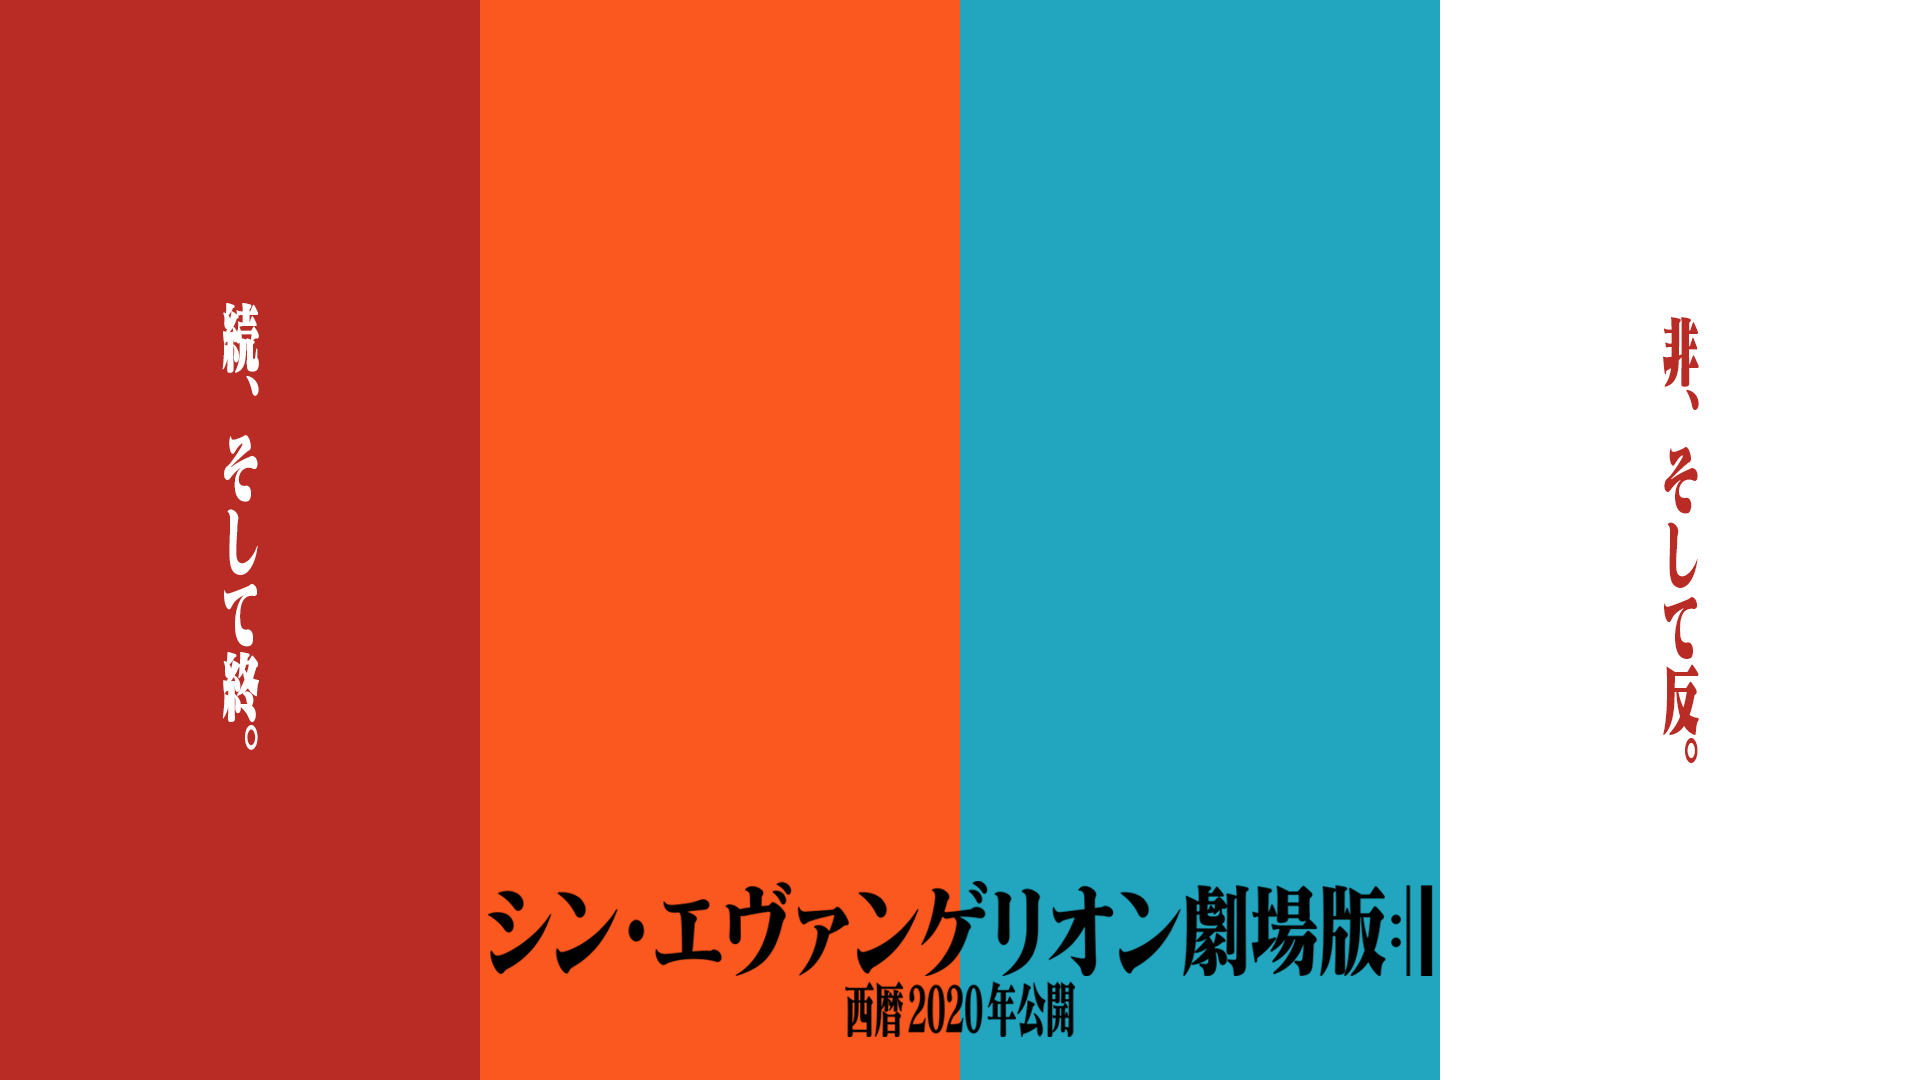 Neon Genesis Evangelion Work Movie Poster 1920x1080